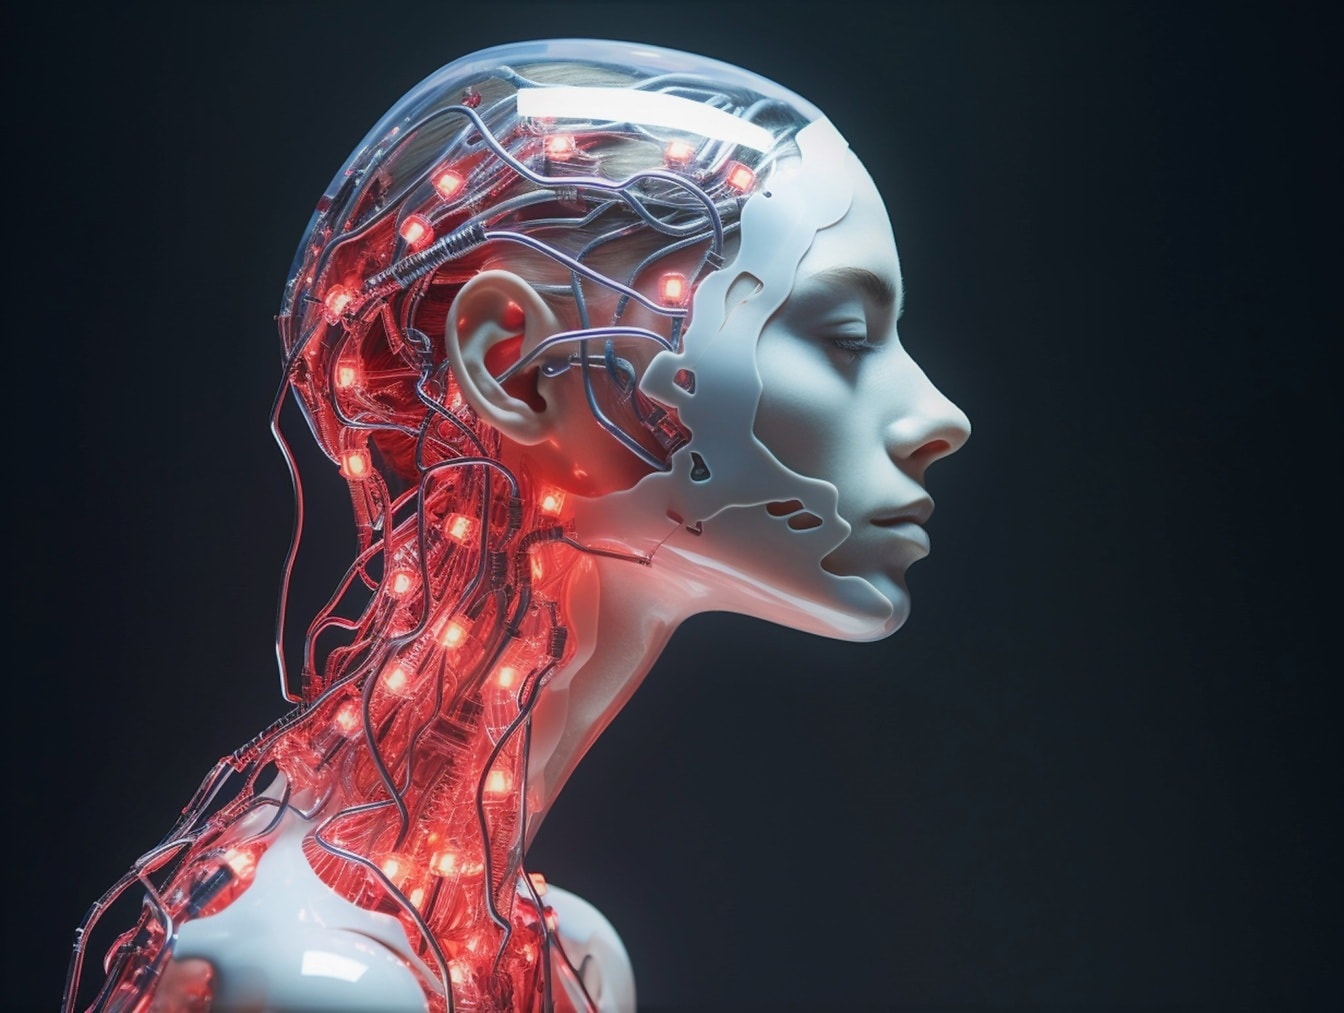 Robot cyborg humanoide femenino con inteligencia artificial